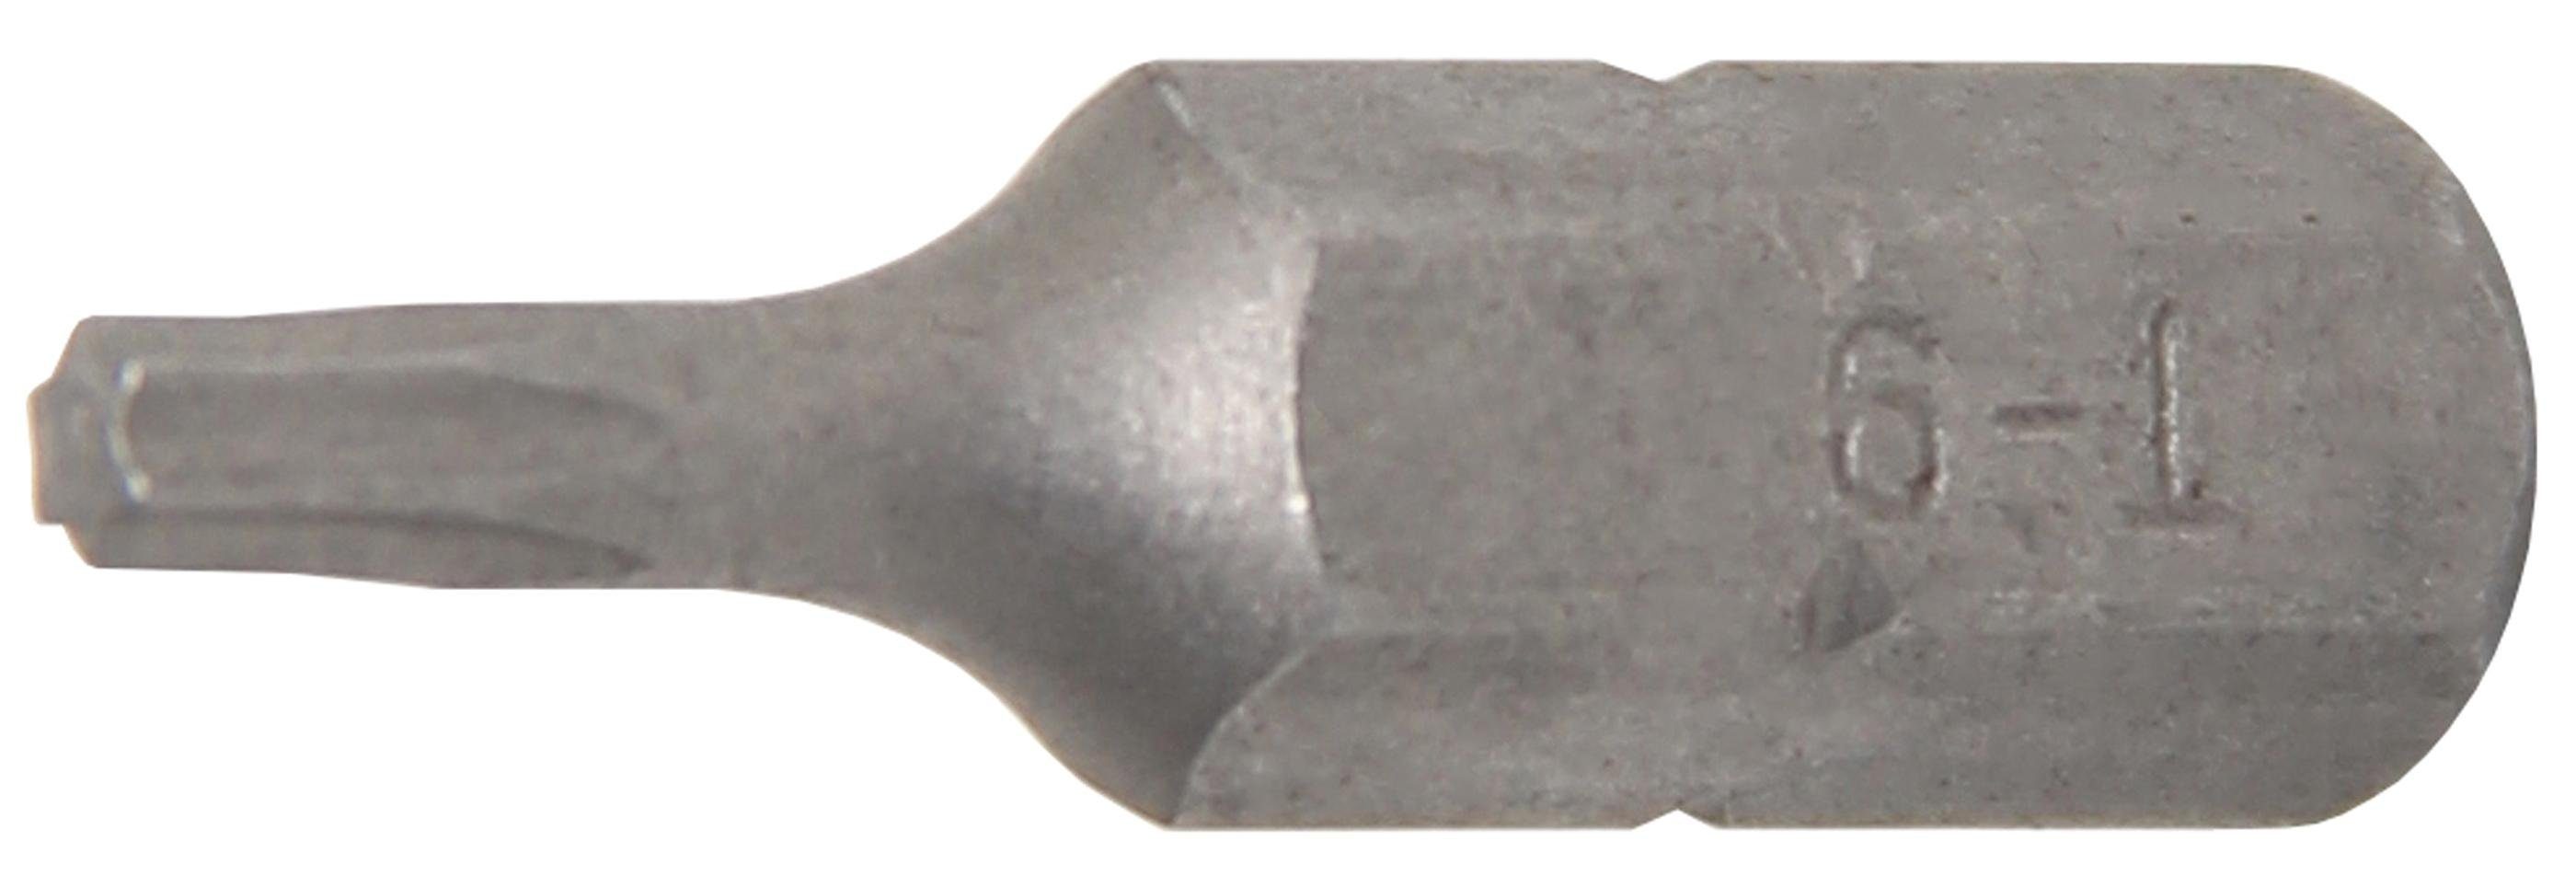 BGS technic Bit-Schraubendreher Bit, Antrieb Außensechskant 6,3 mm (1/4), T-Profil (für Torx) T9